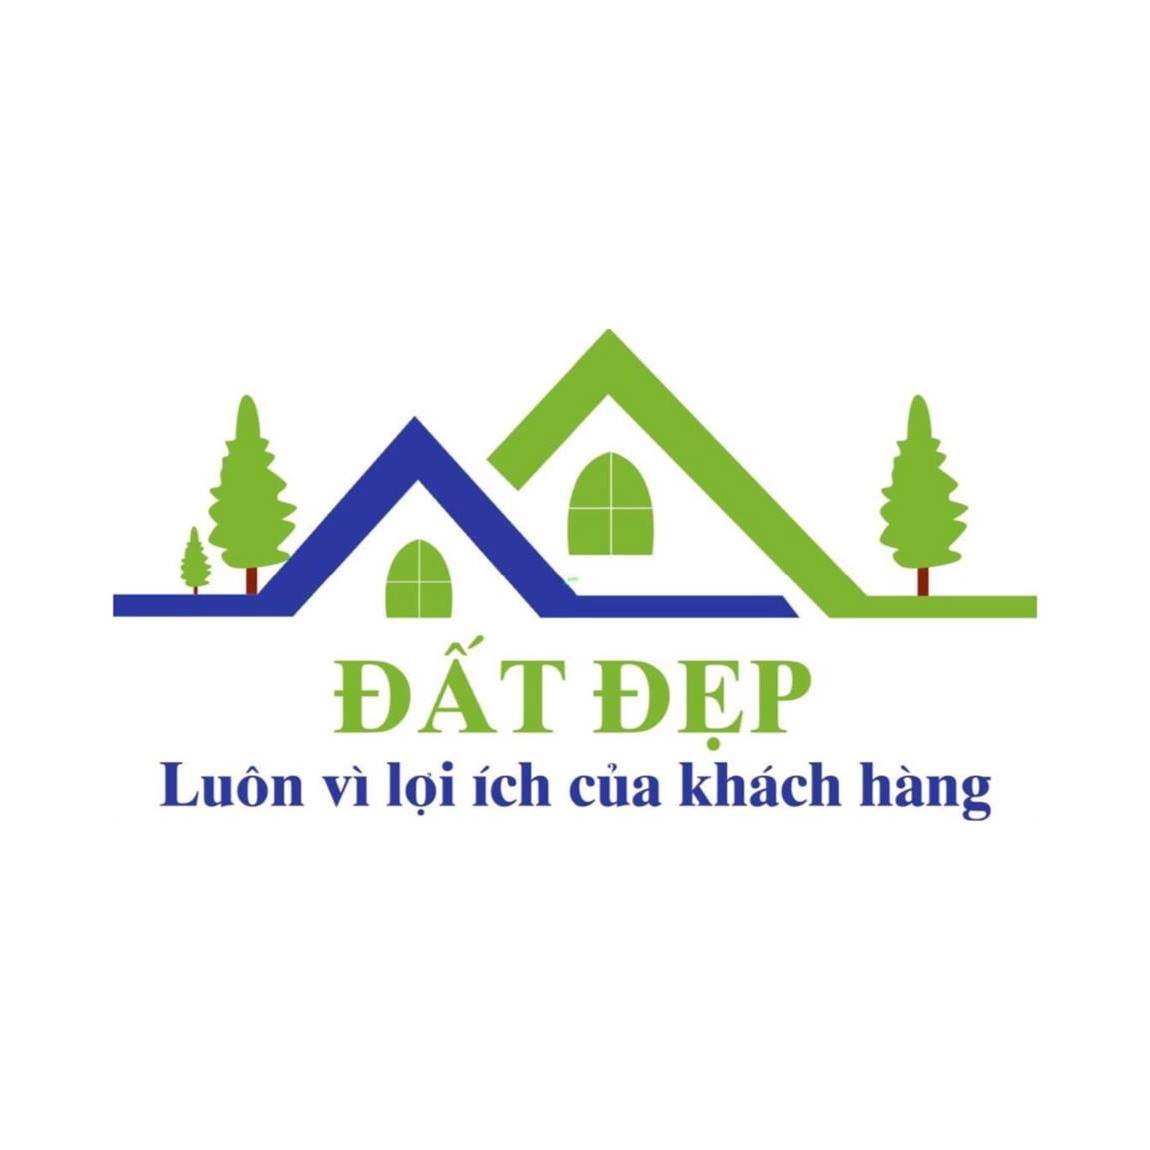 100+ Mẫu Logo Nhà Đẹp